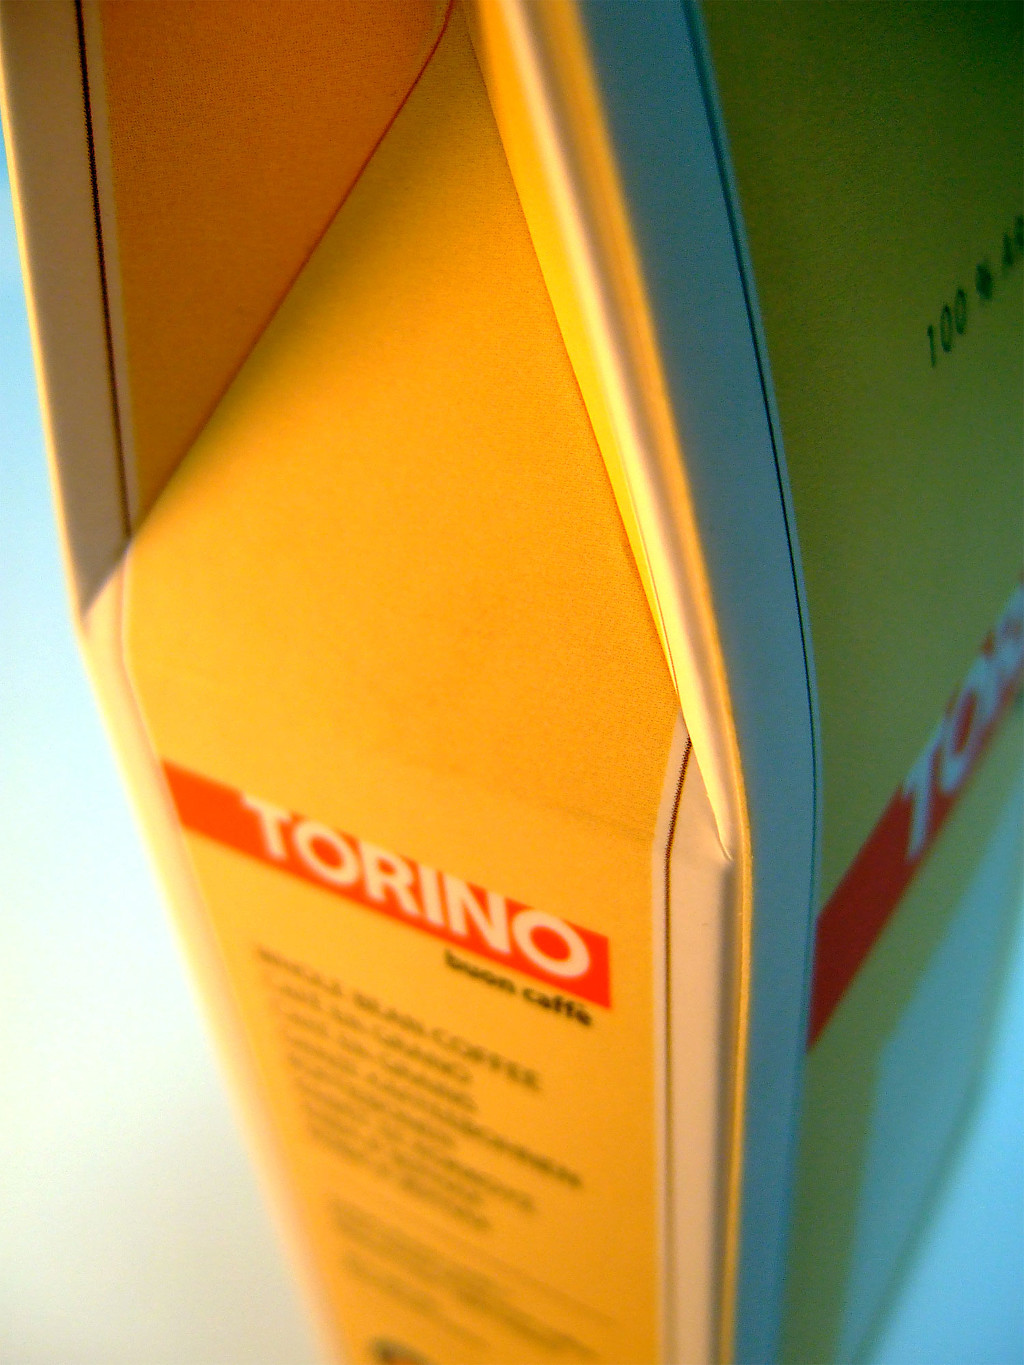 Печать упаковки «Torino». Полиграфия типографии Макрос, изготовление упаковки, спецификация 971993-9